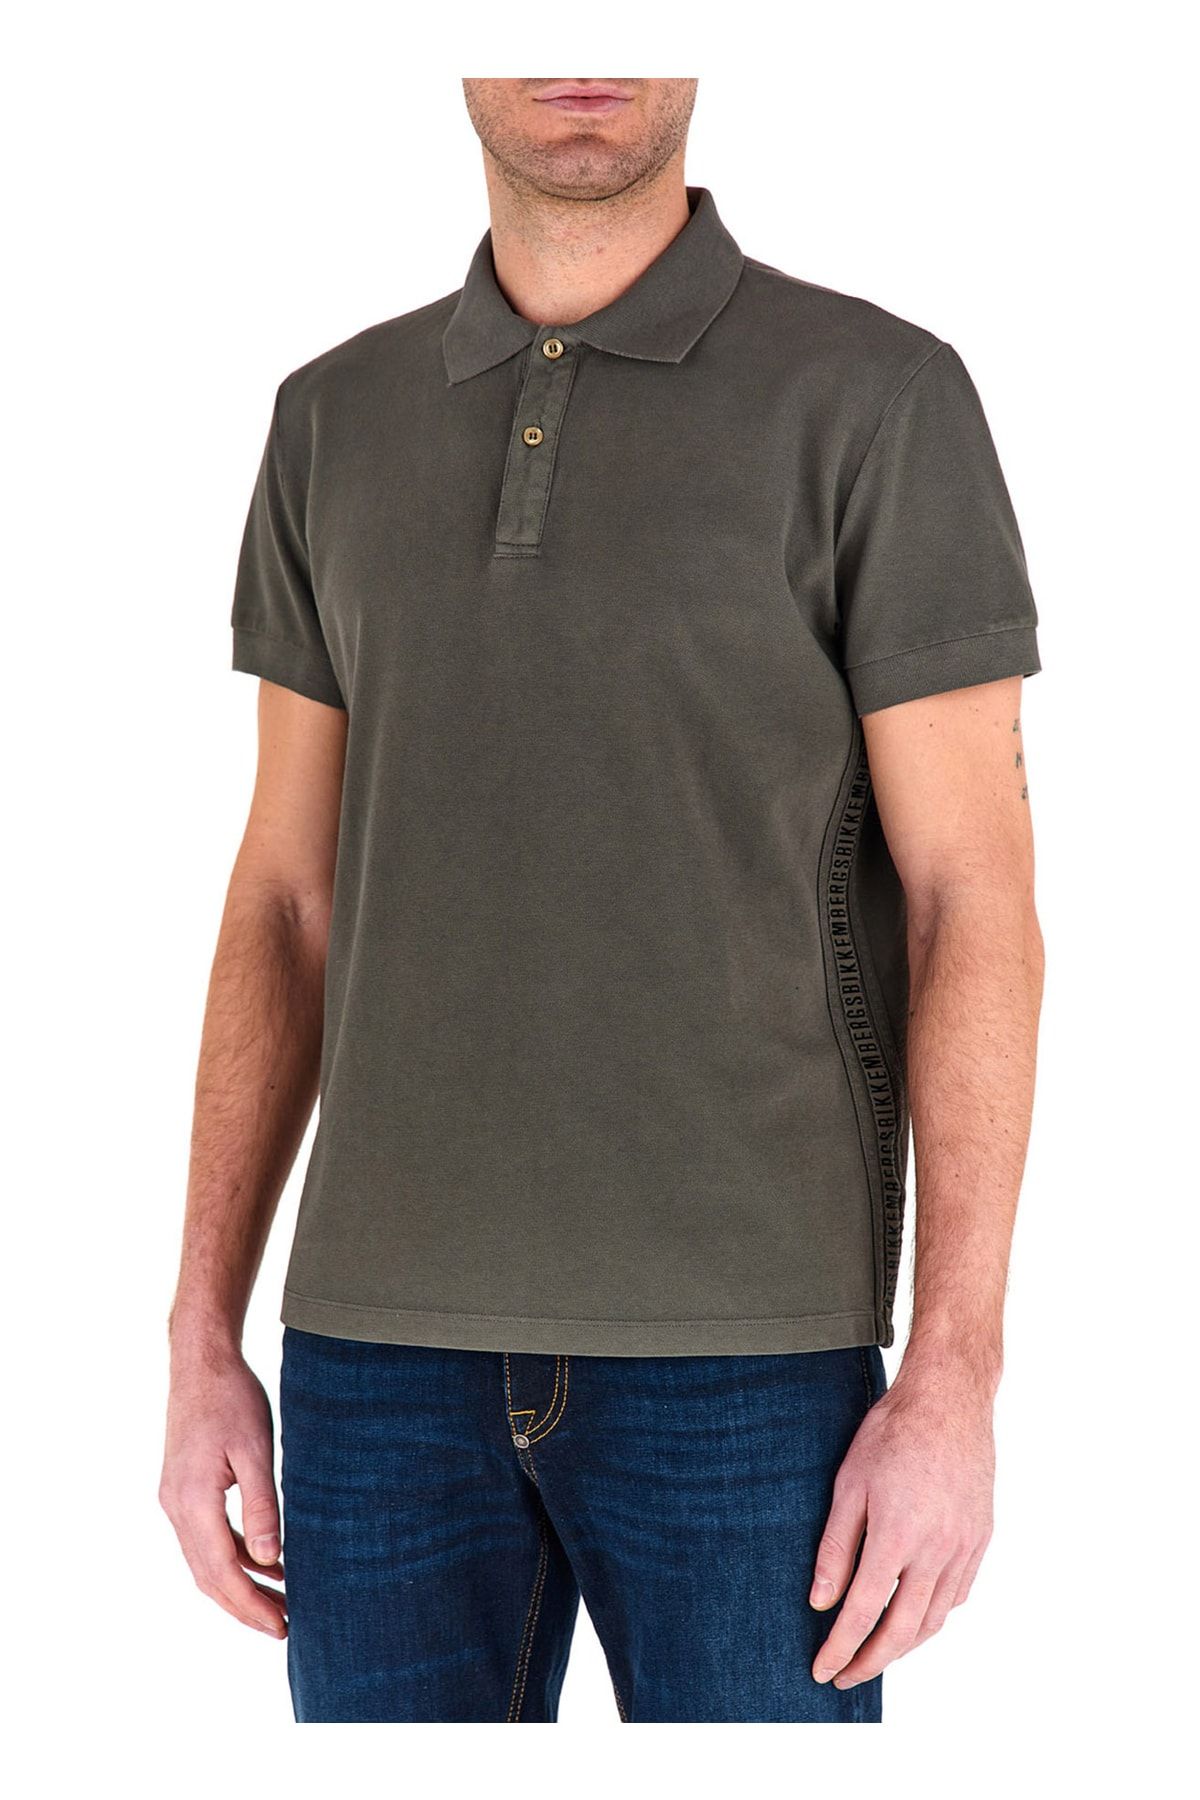 Bikkembergs Düğmeli Yaka Yeşil Erkek Polo T-shirt C 8 090 80 M 4422